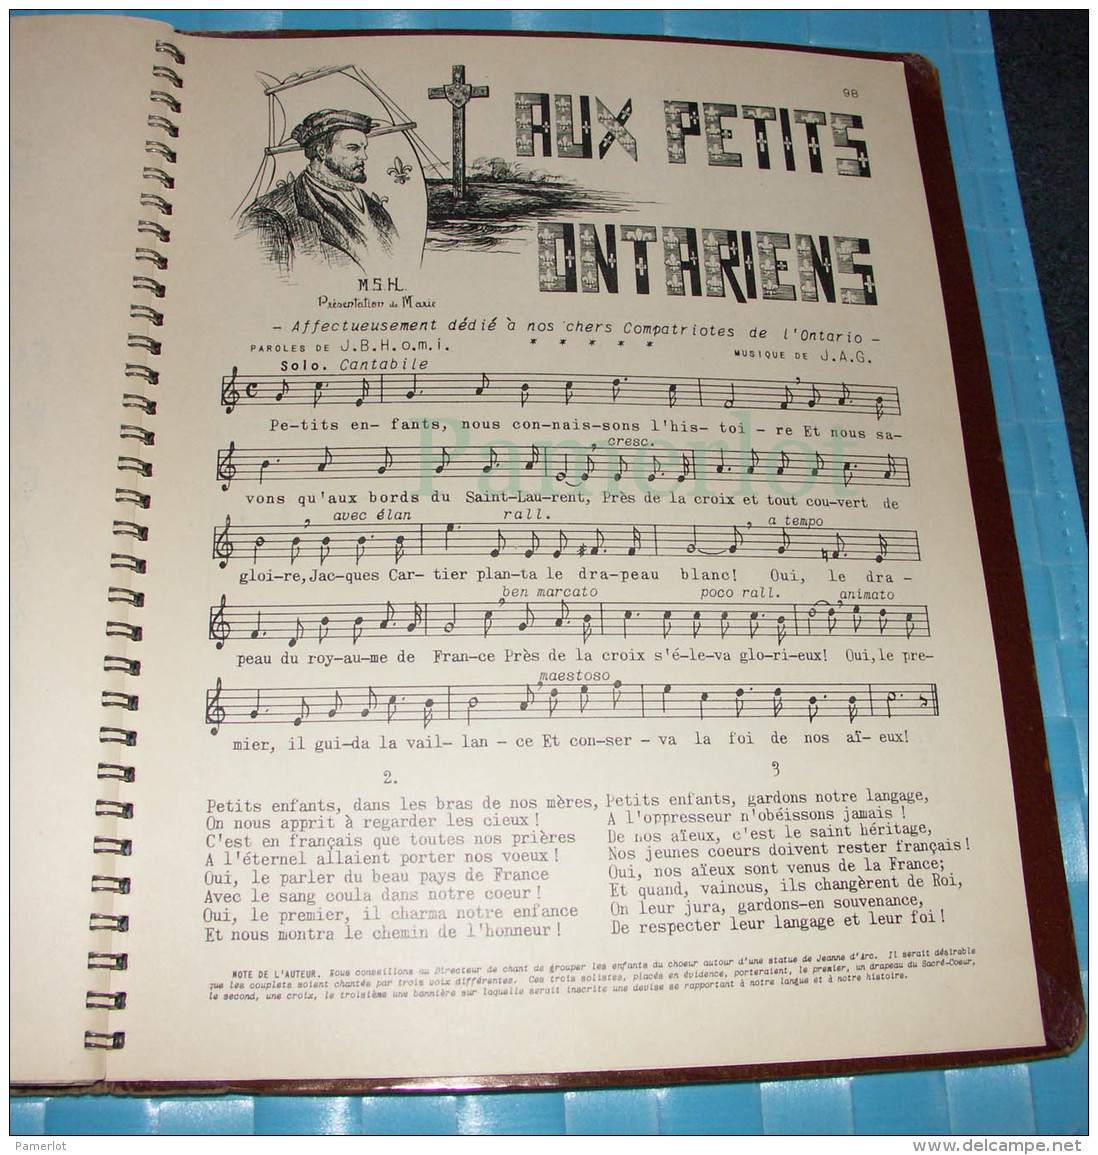 Seminaire De St-Hyacinthe, La Bonne Chanson Par Charles-Emile Gadbois Ptre, 1938 - Musique